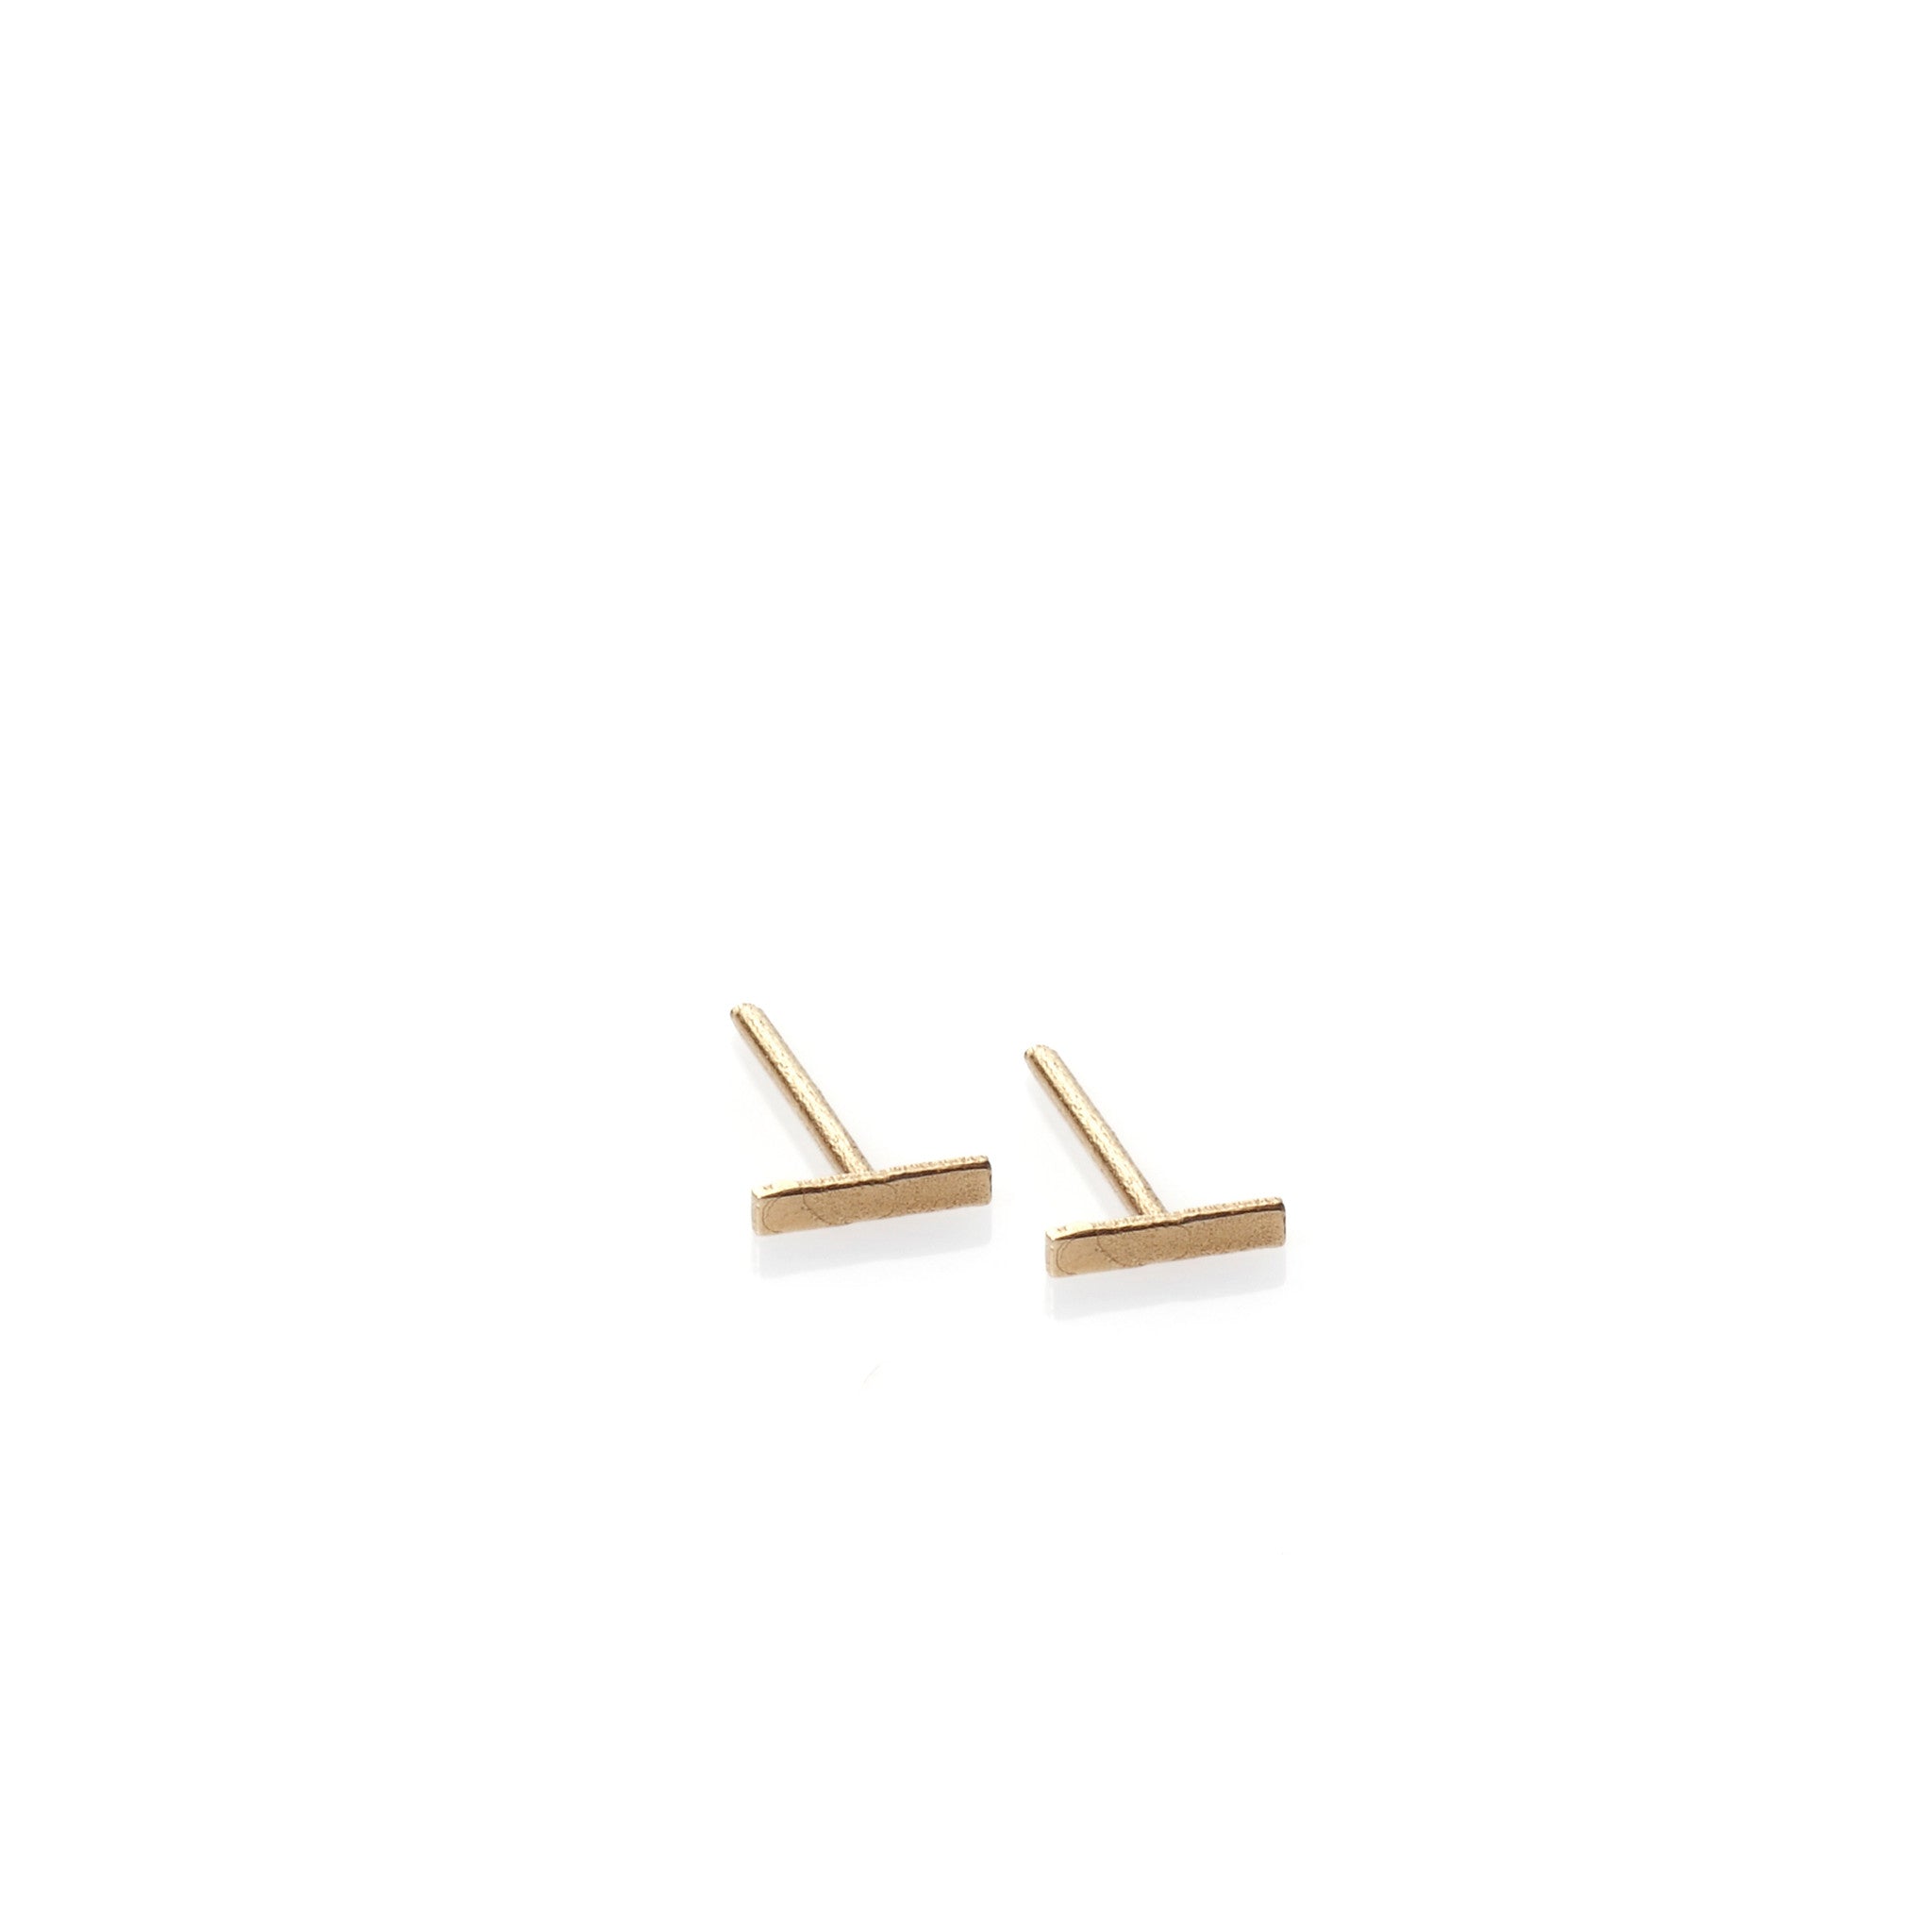 Stripe - 14k gold studs earrings